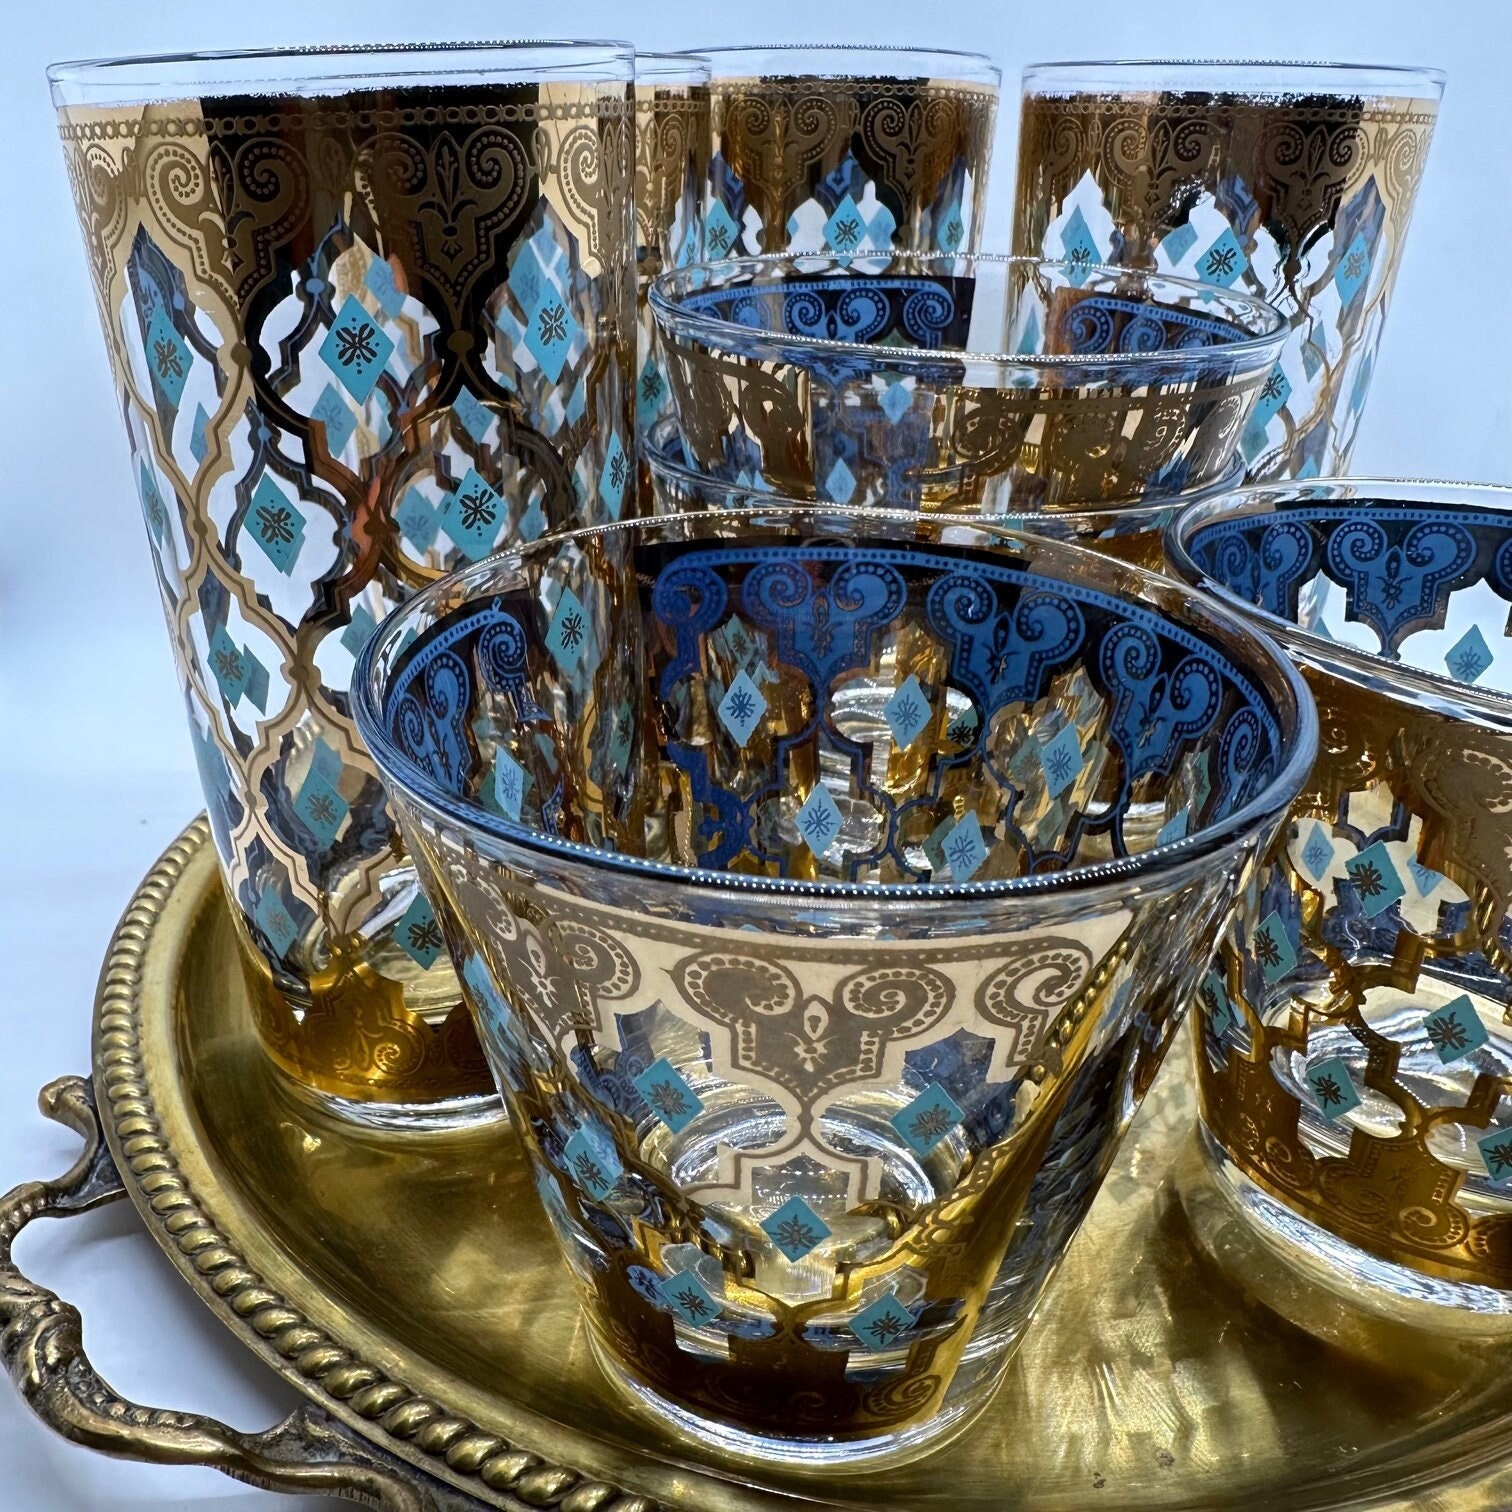 Vintage Glasses 2 Drinking Glassware Bar Blue Turquoise Orange Boho Coastal  MCM